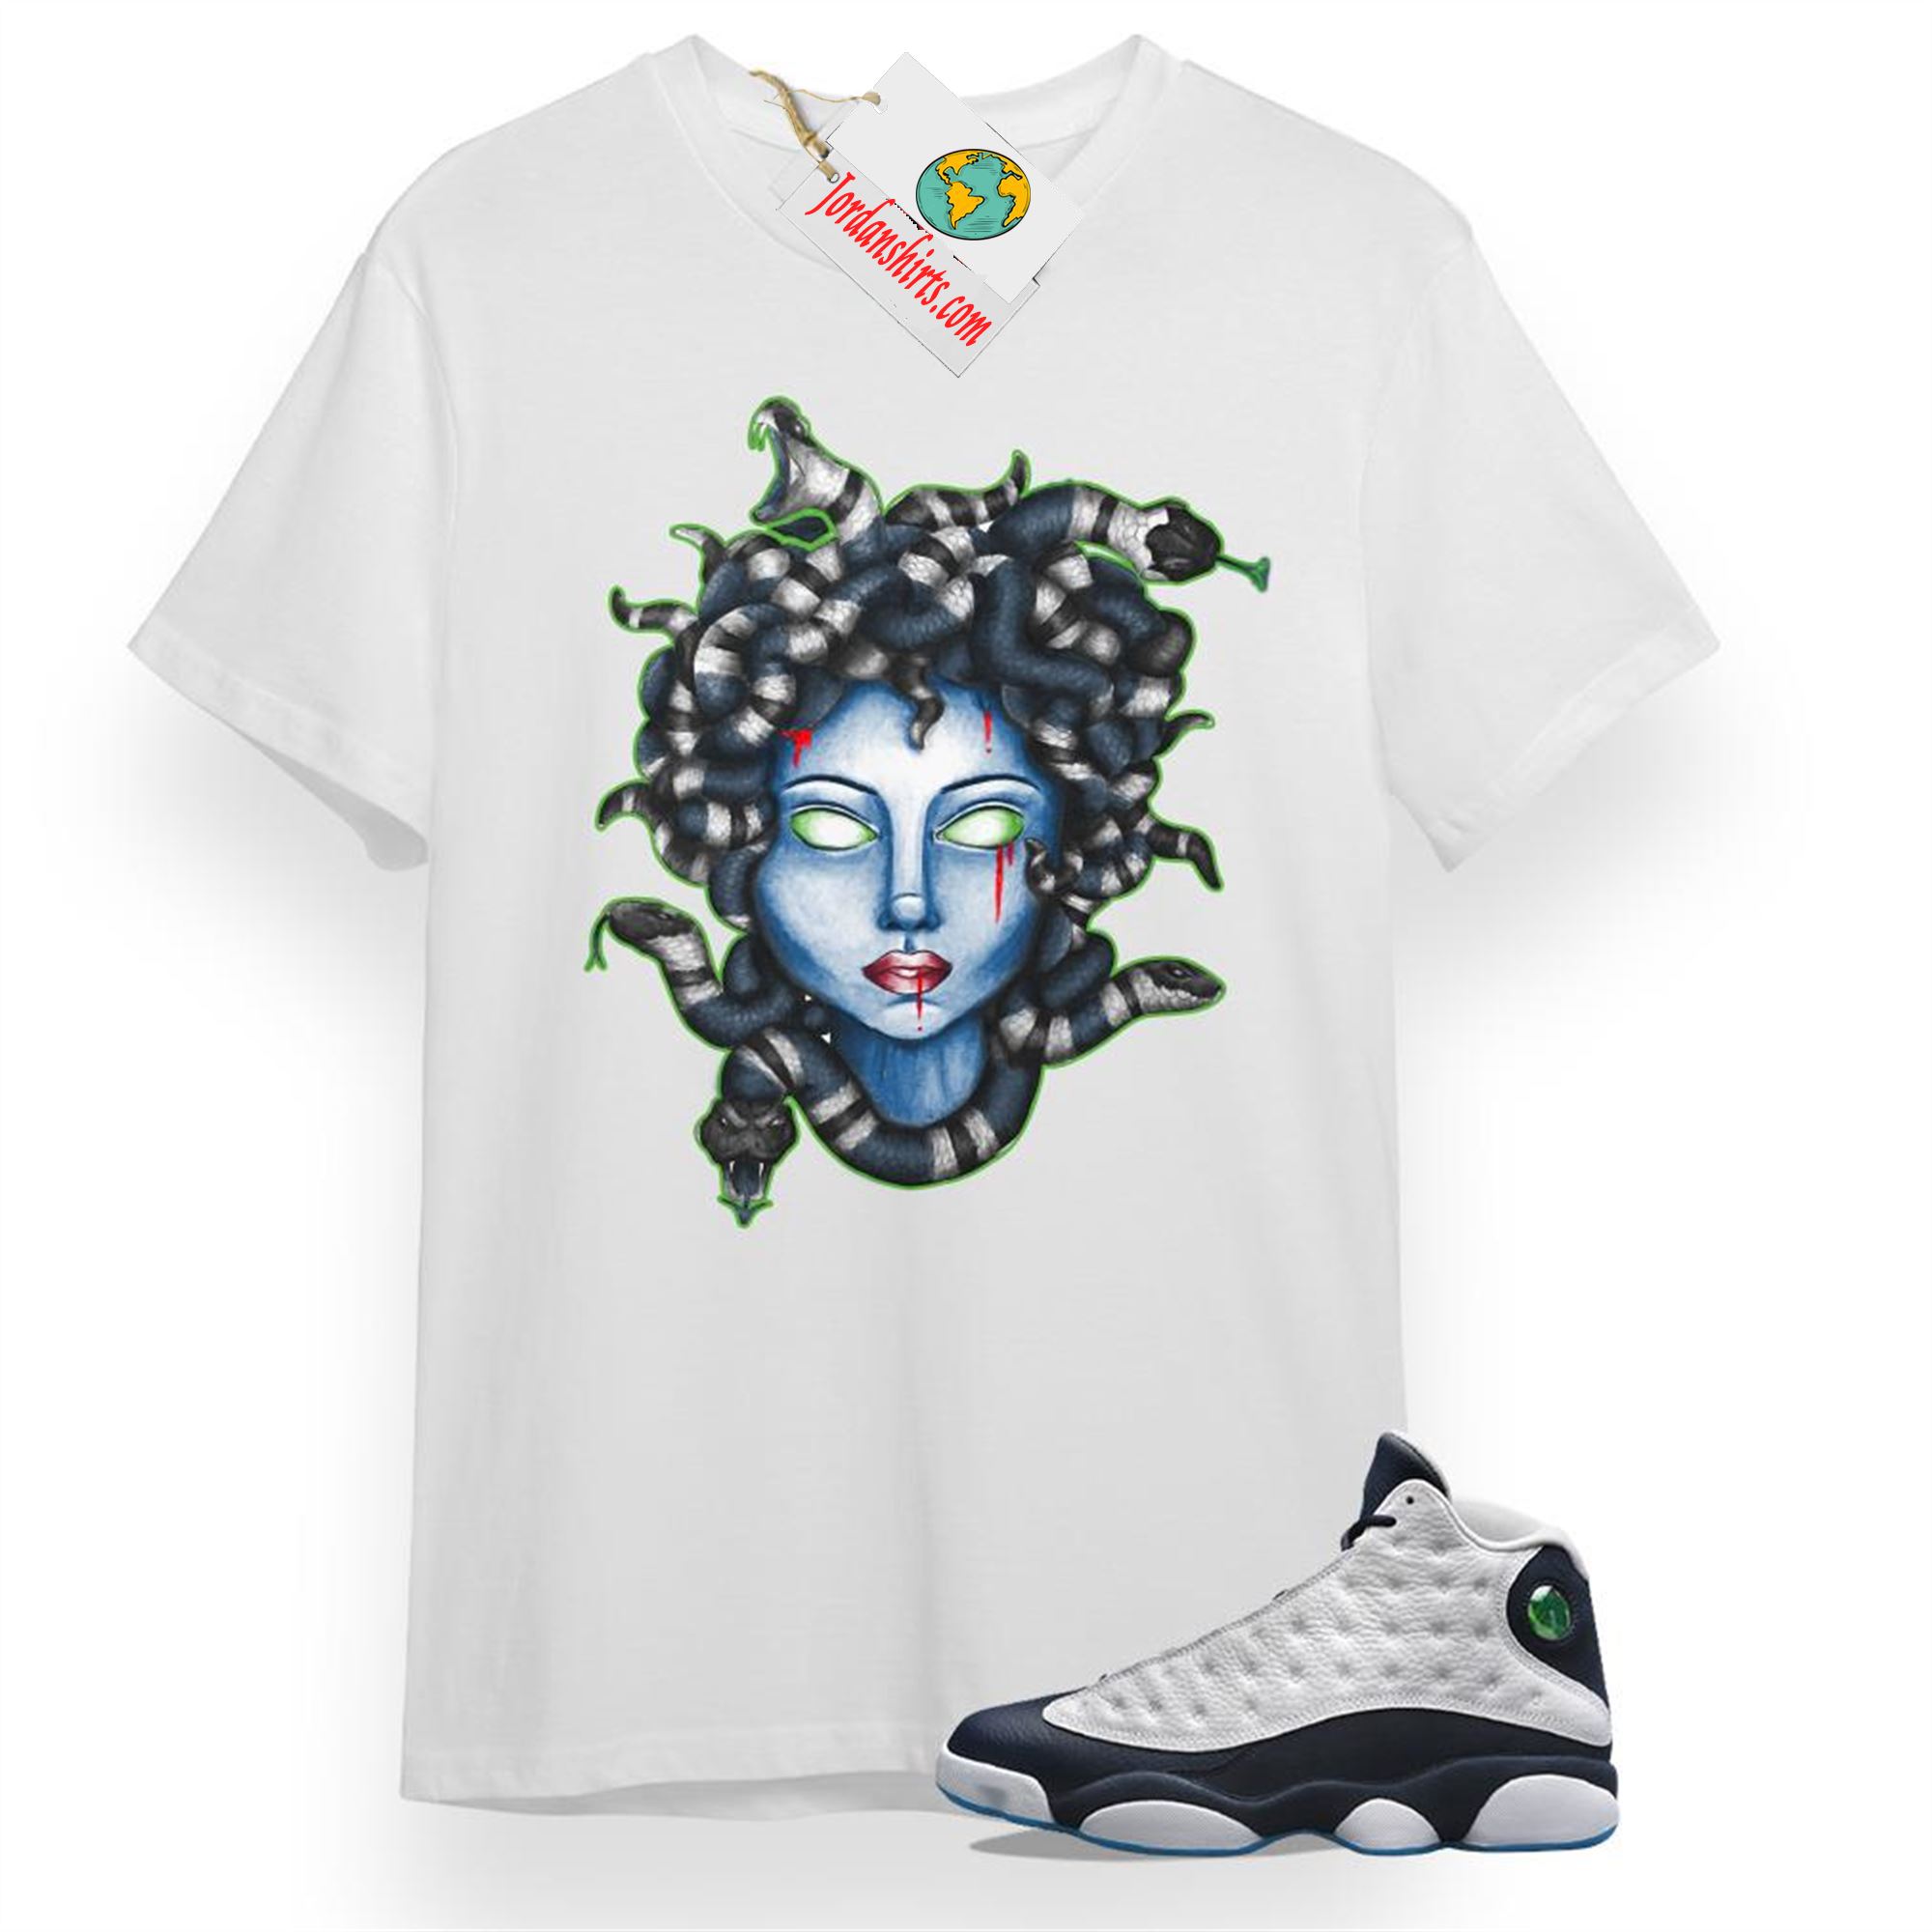 Jordan 13 Shirt, Medusa Snake White T-shirt Air Jordan 13 Obsidian 13s Full Size Up To 5xl